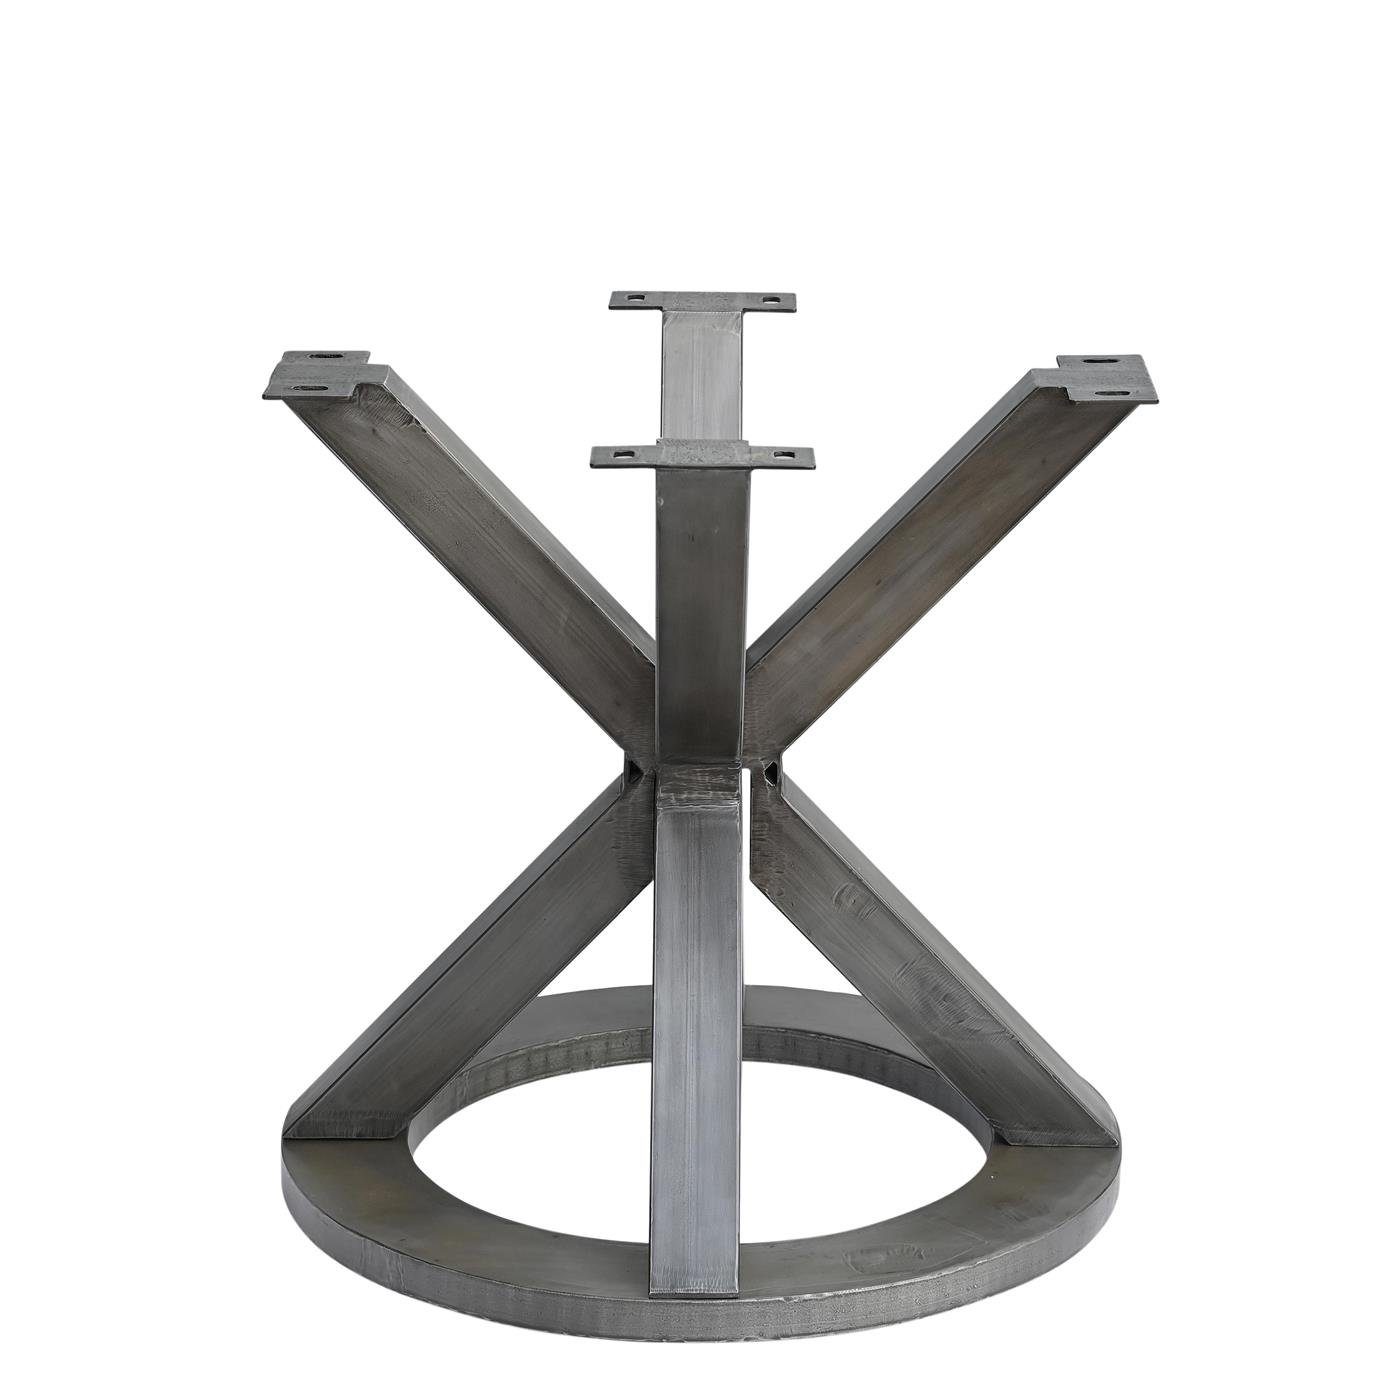 baario Esstisch Tischgestell MERID Metall grau Tischfuß Tischbein rund, geschmiedet Design Eisen